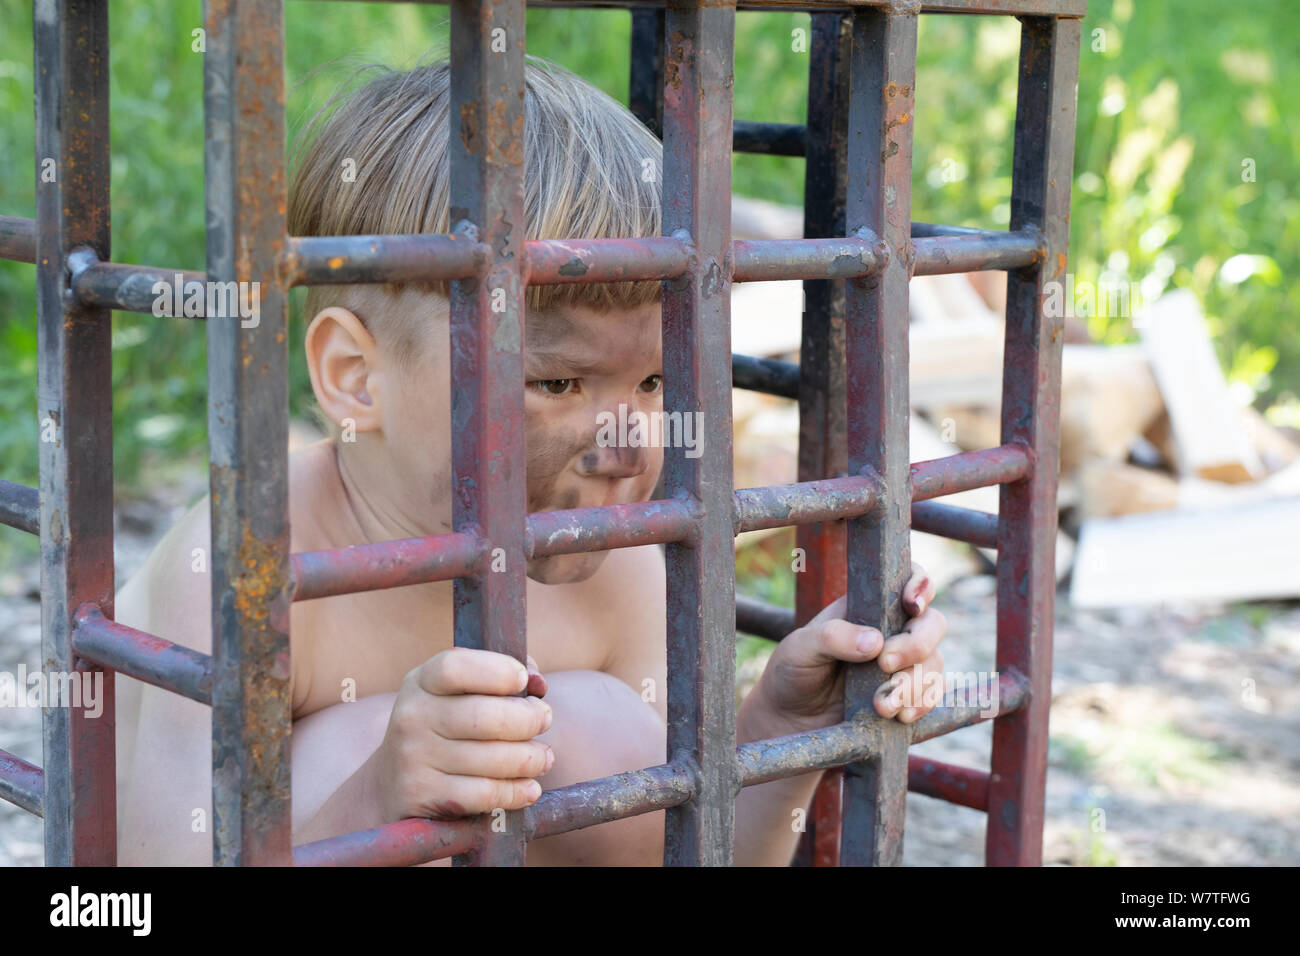 5-year-old boy à peau blanche avec des cheveux blonds sales et dénudé assis dans une cage. concept d'enlèvement, l'esclavage des enfants Banque D'Images